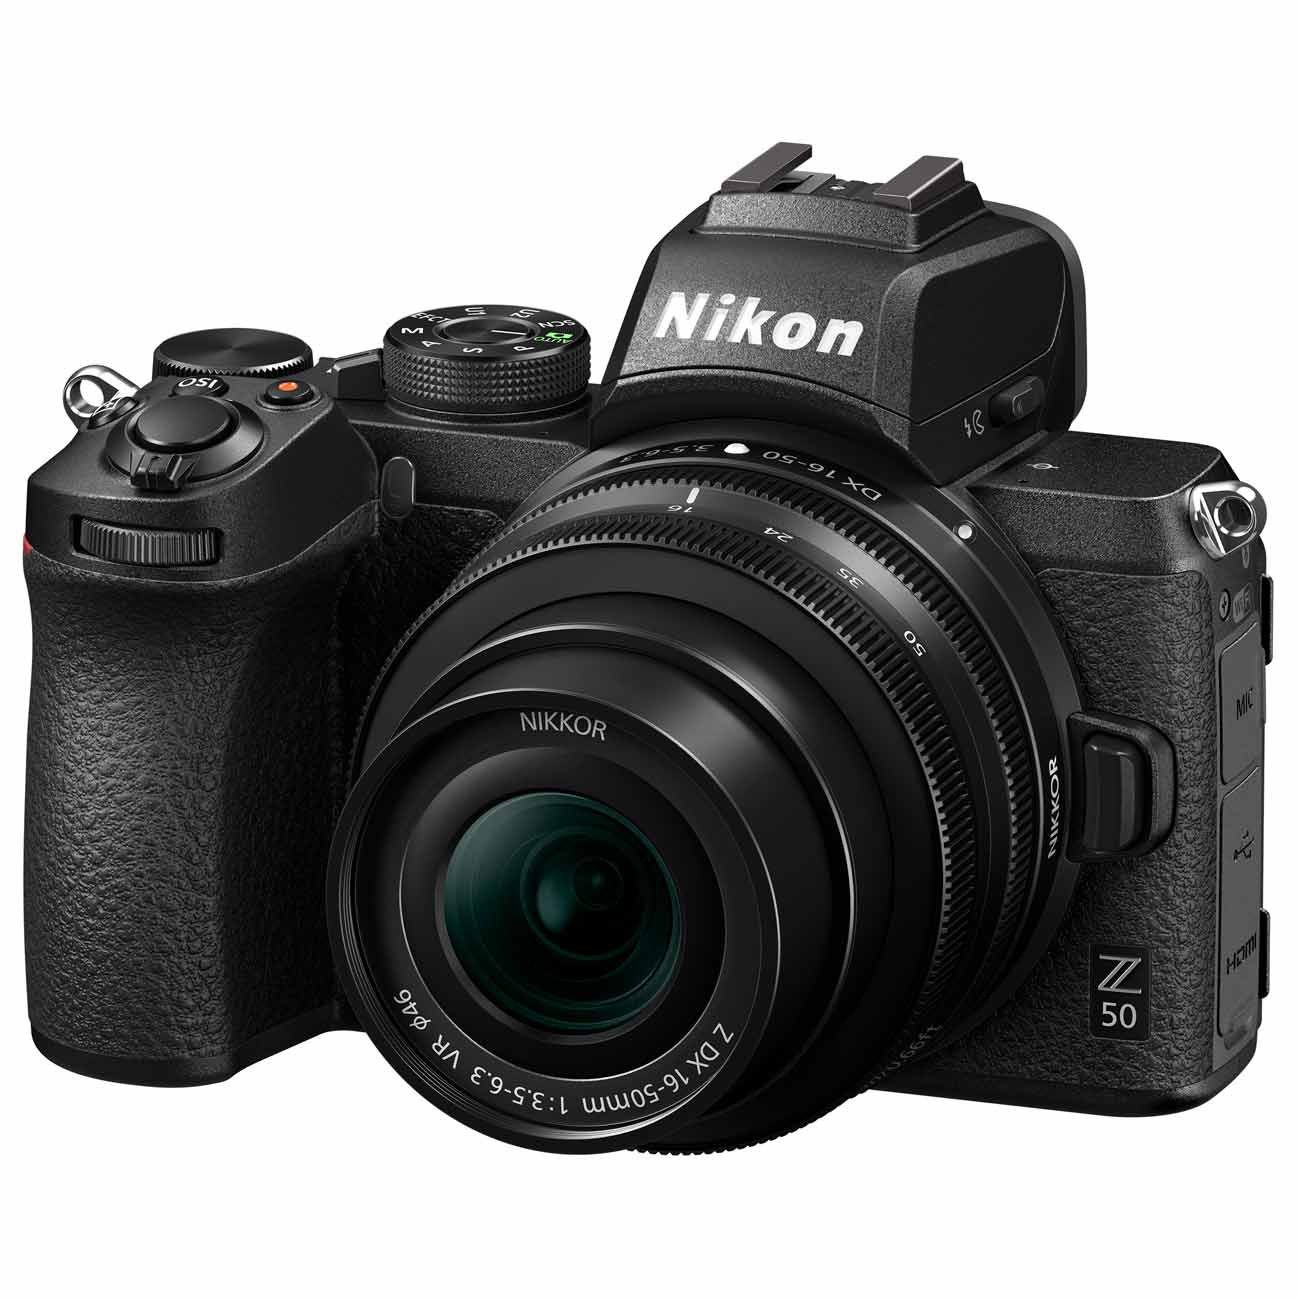 Nikon Z5 Kit 24-50mm F/4.5 - 6.3 VR   переходник FTZ Гарантия Производителя. Ростест/ЕАС